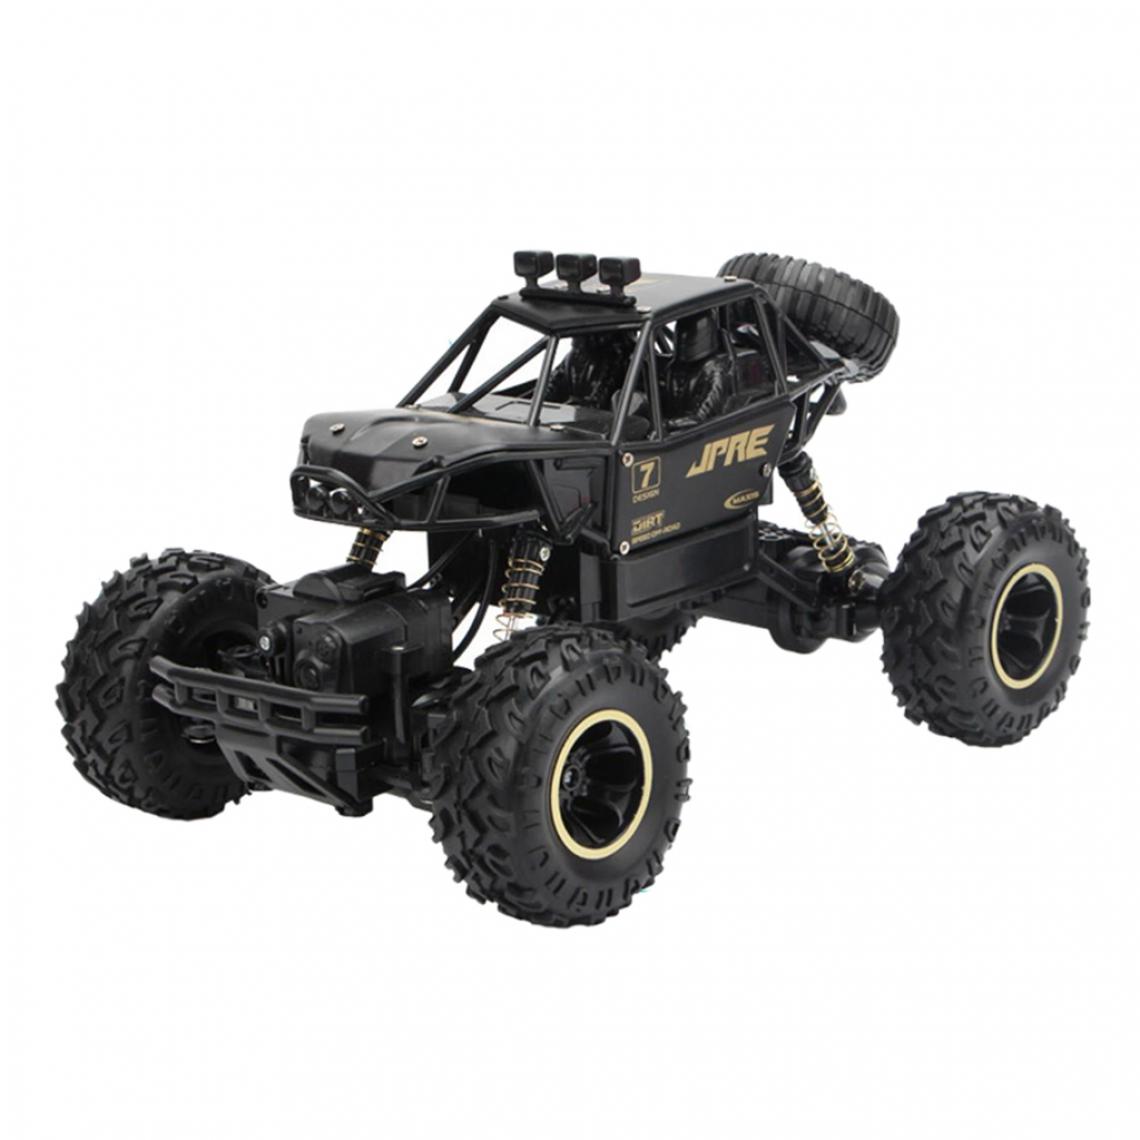 marque generique - 1:16 échelle 4WD RC Voiture 2.4G Radiocommande Monster Truck Jouets Pour Enfants Noir - Accessoires maquettes